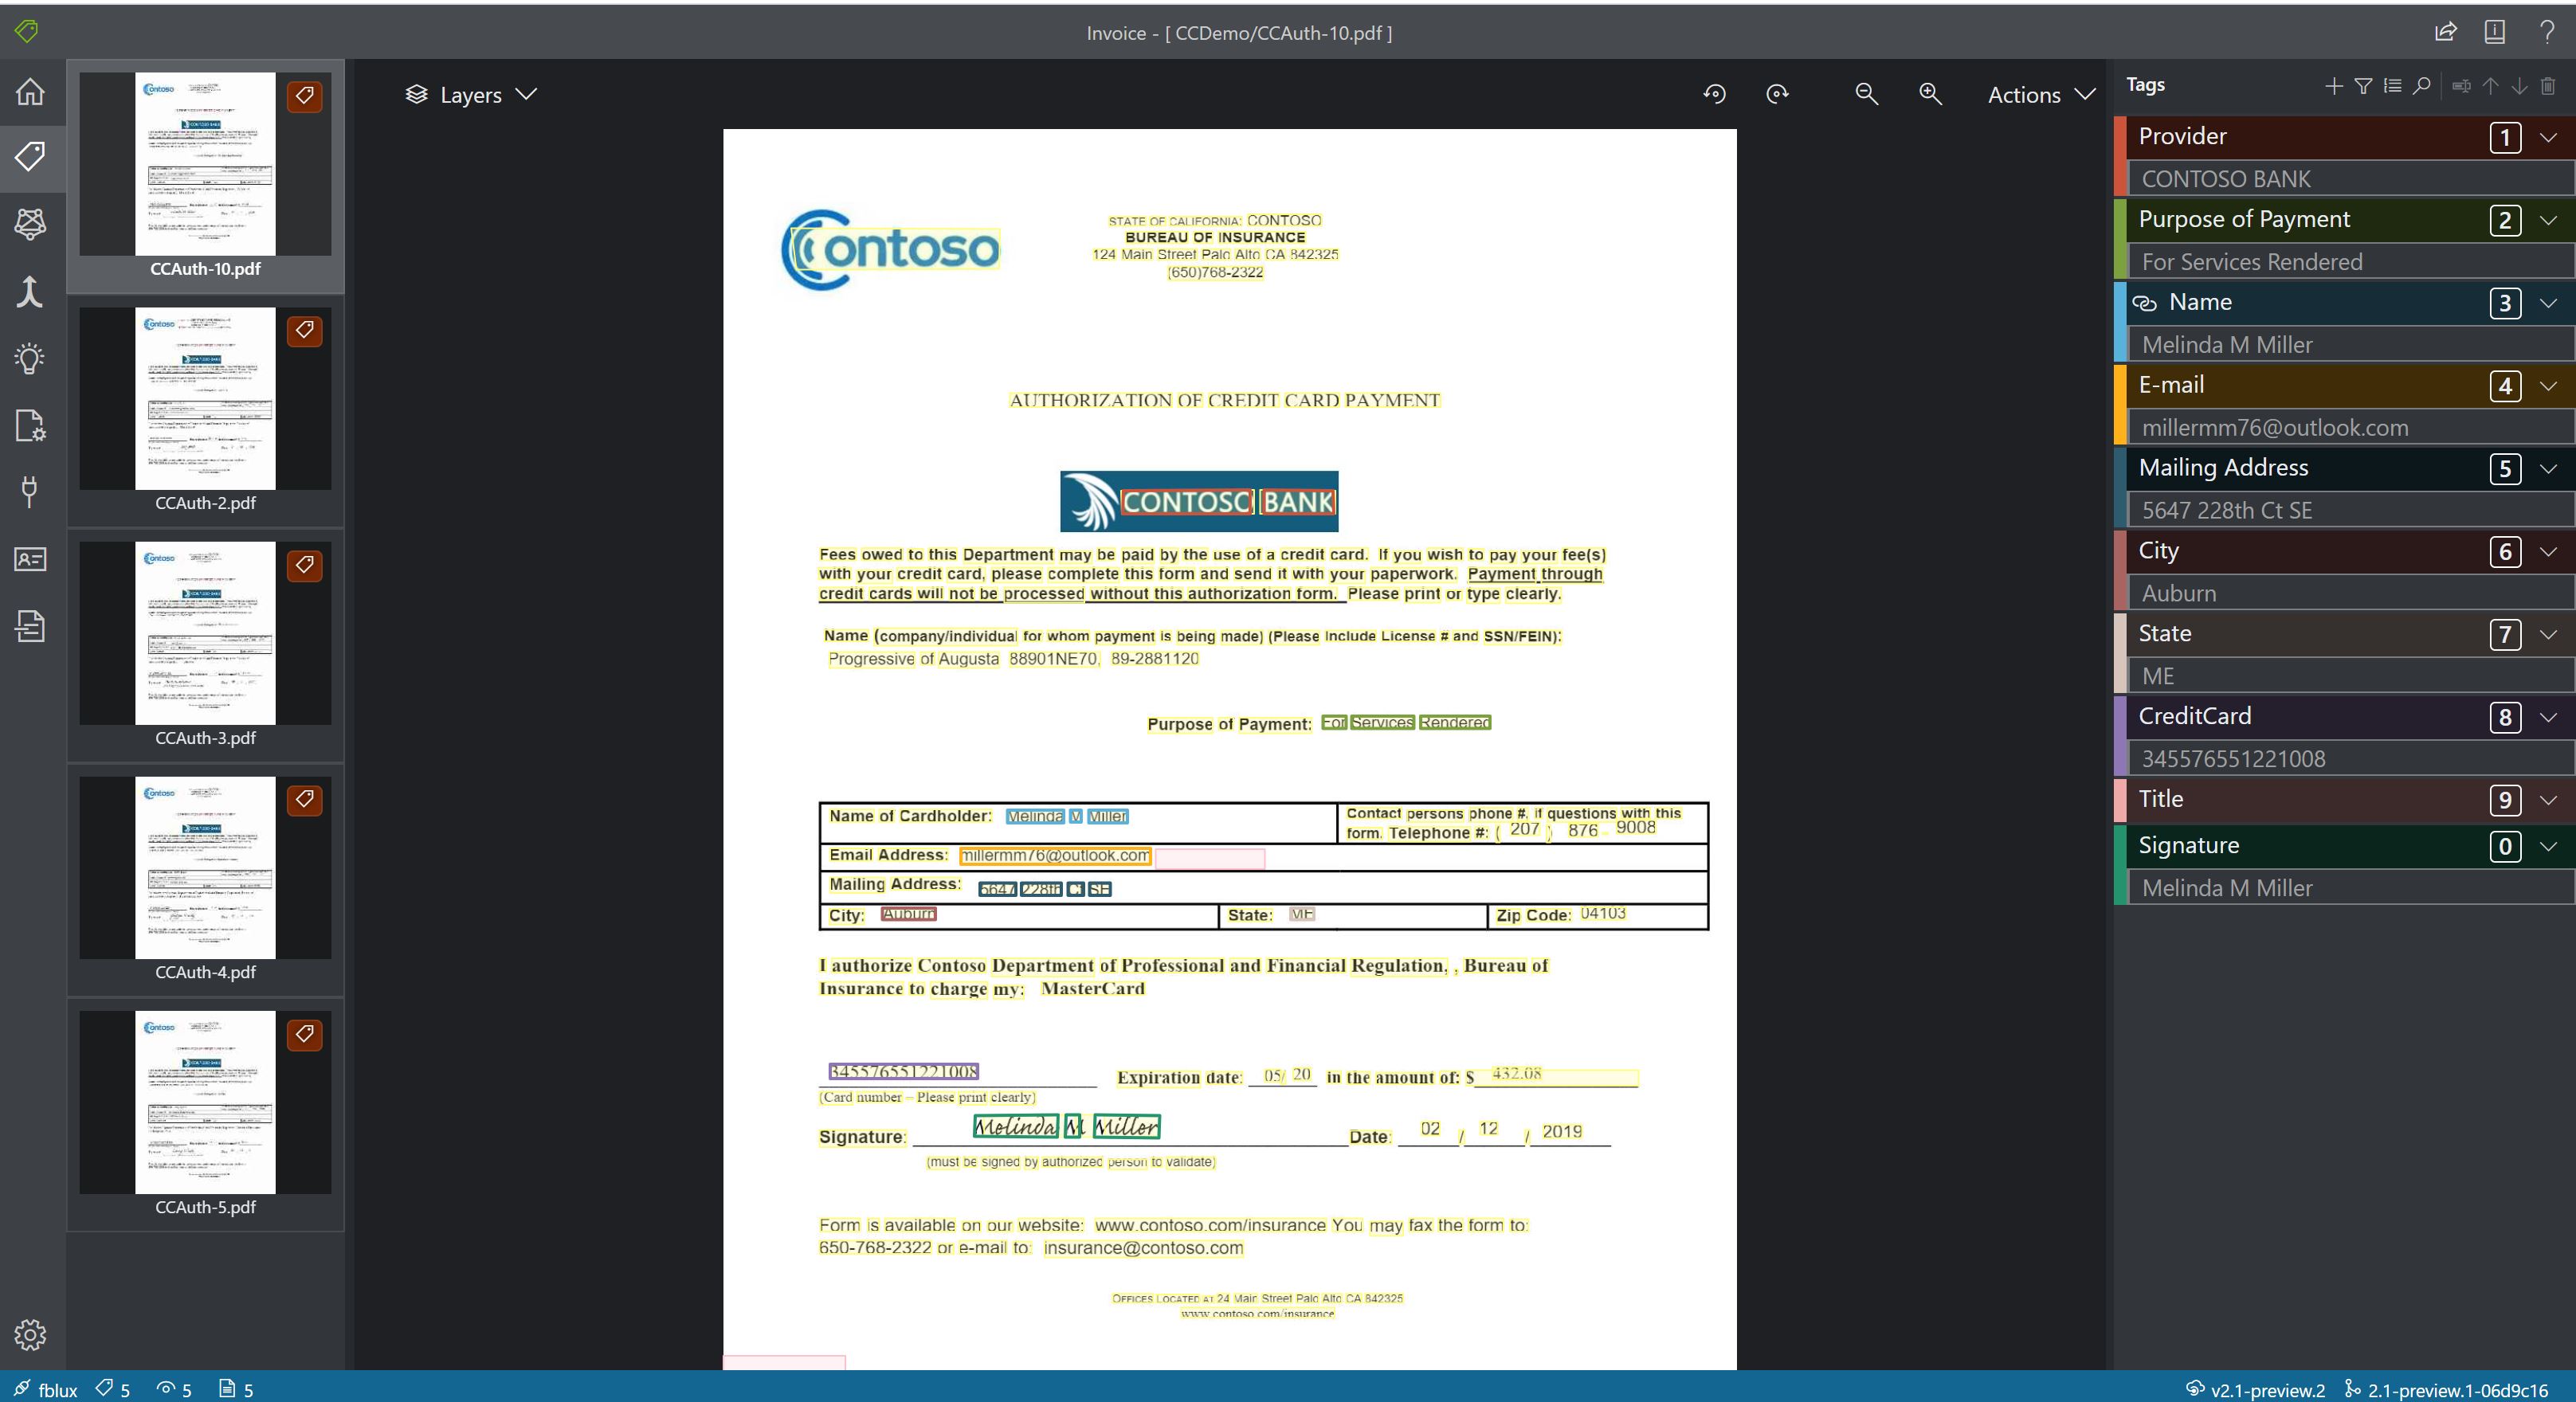 Снимок экрана: окно анализа пользовательской формы средства аналитики документов.